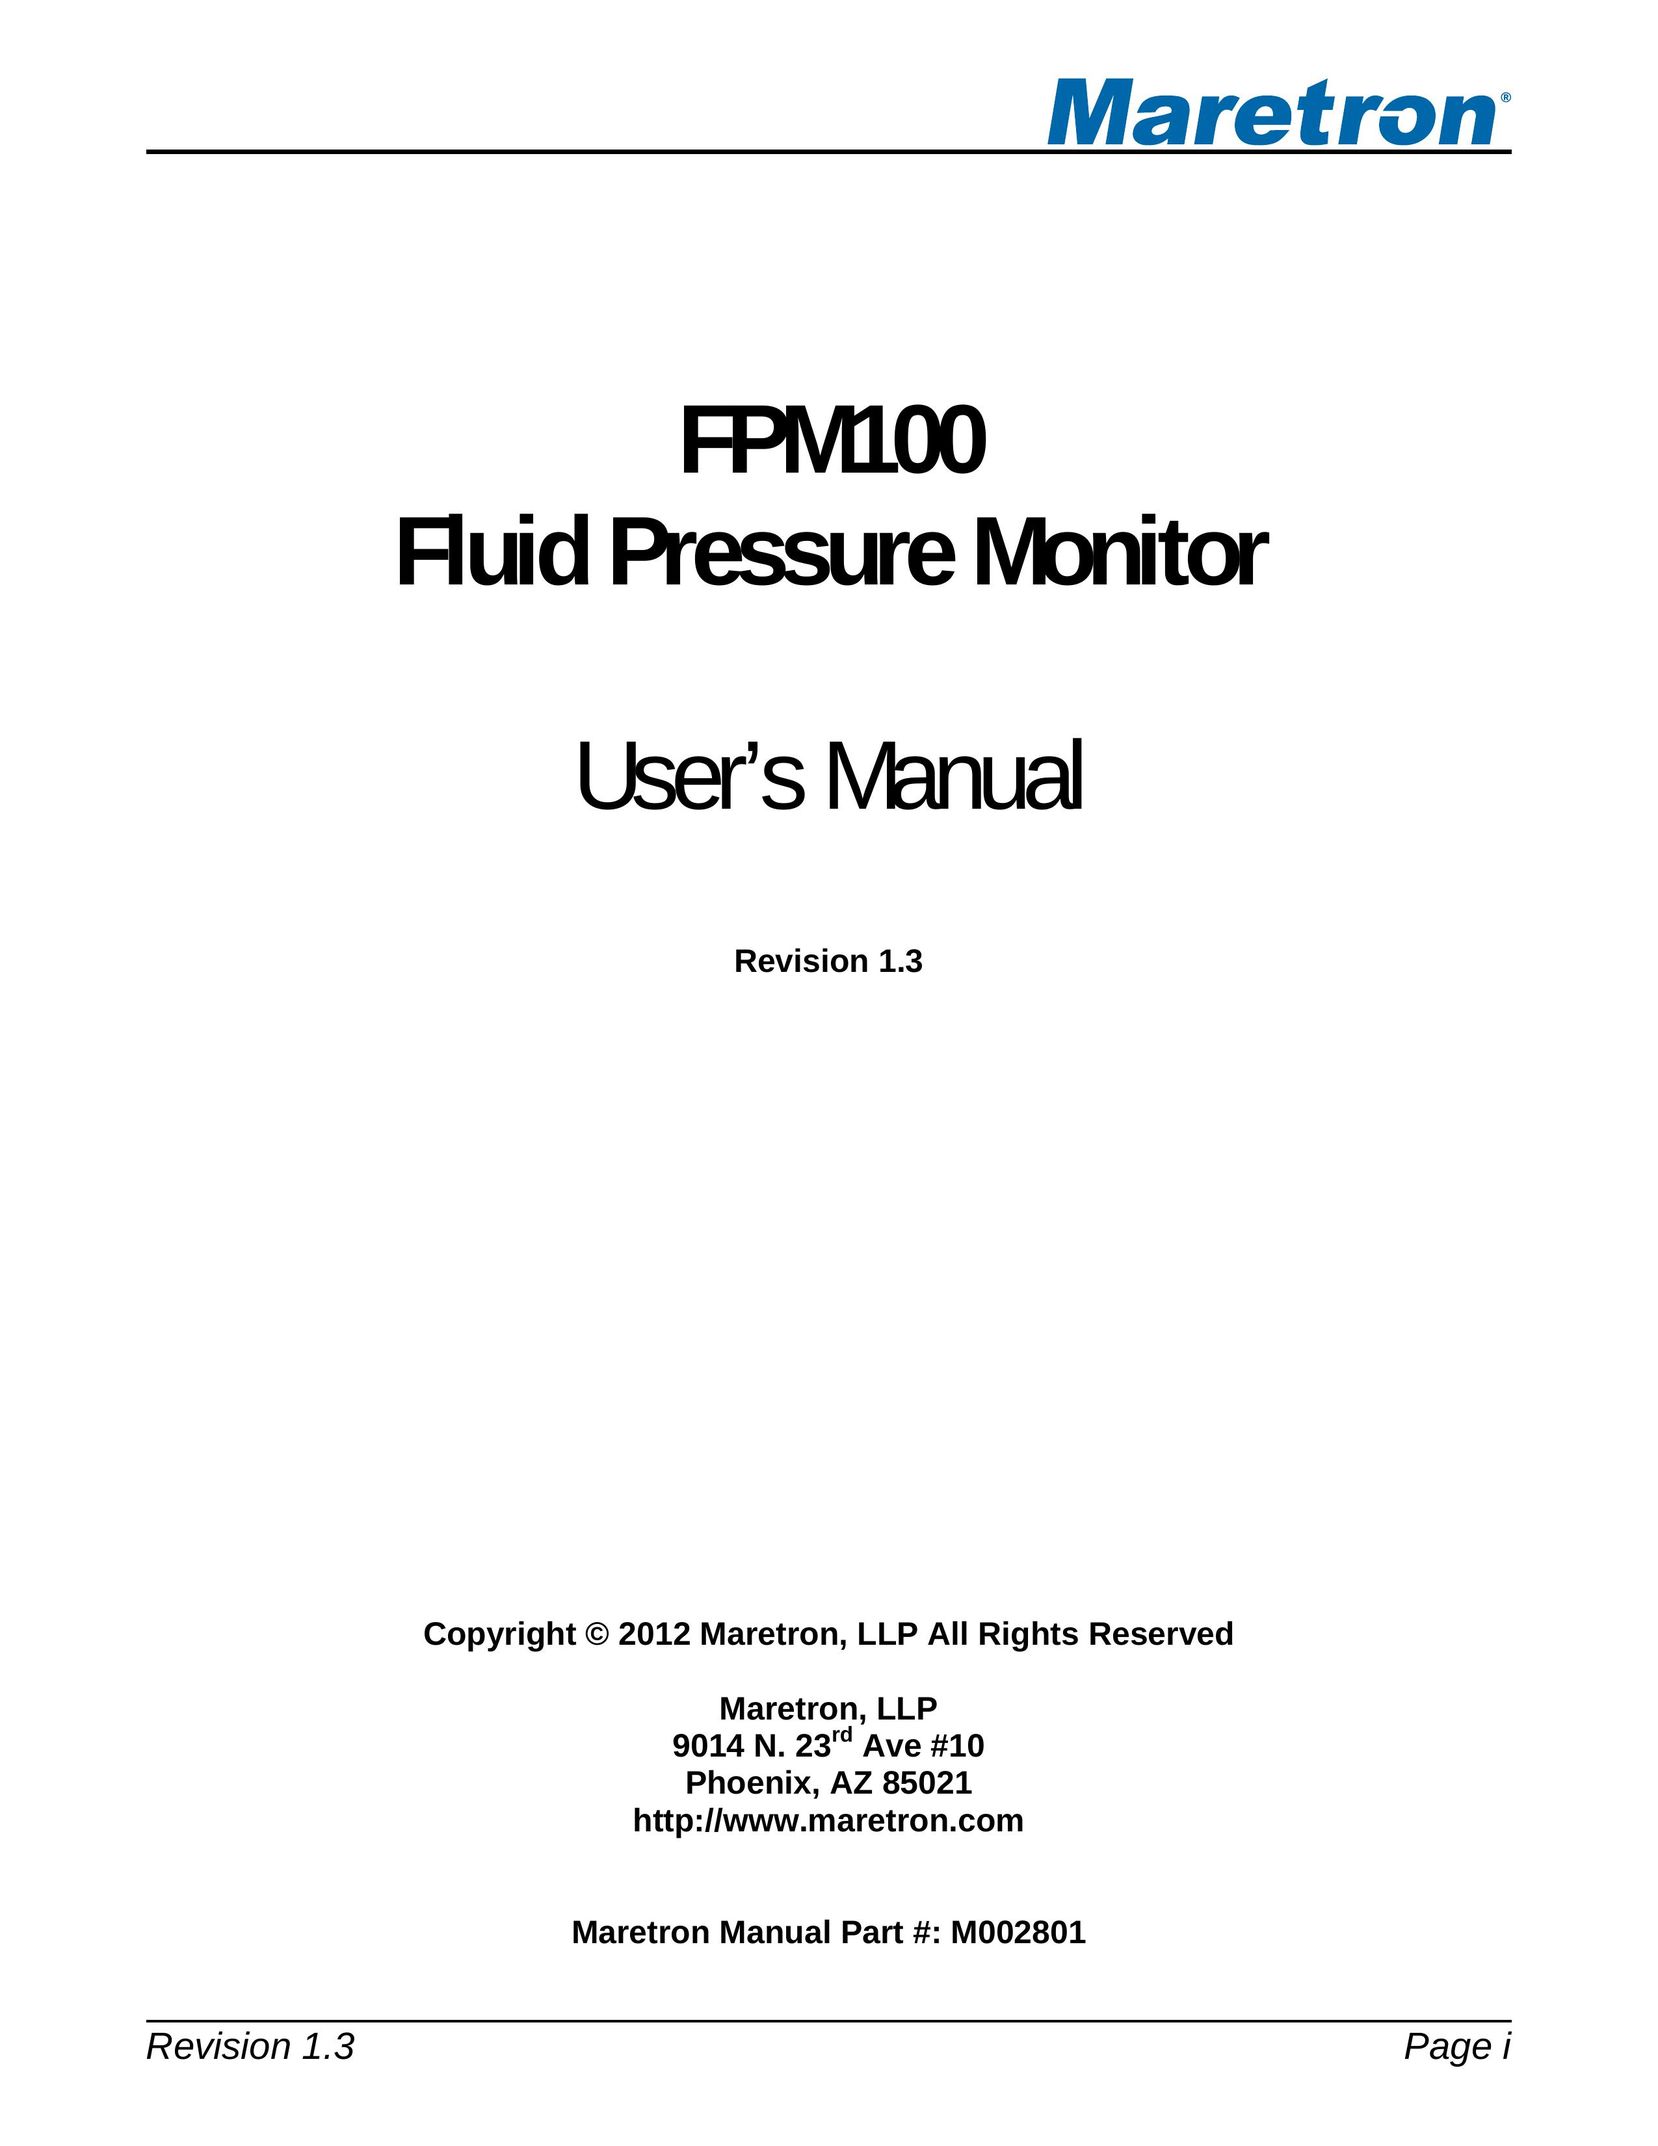 Maretron FPM100 Computer Monitor User Manual